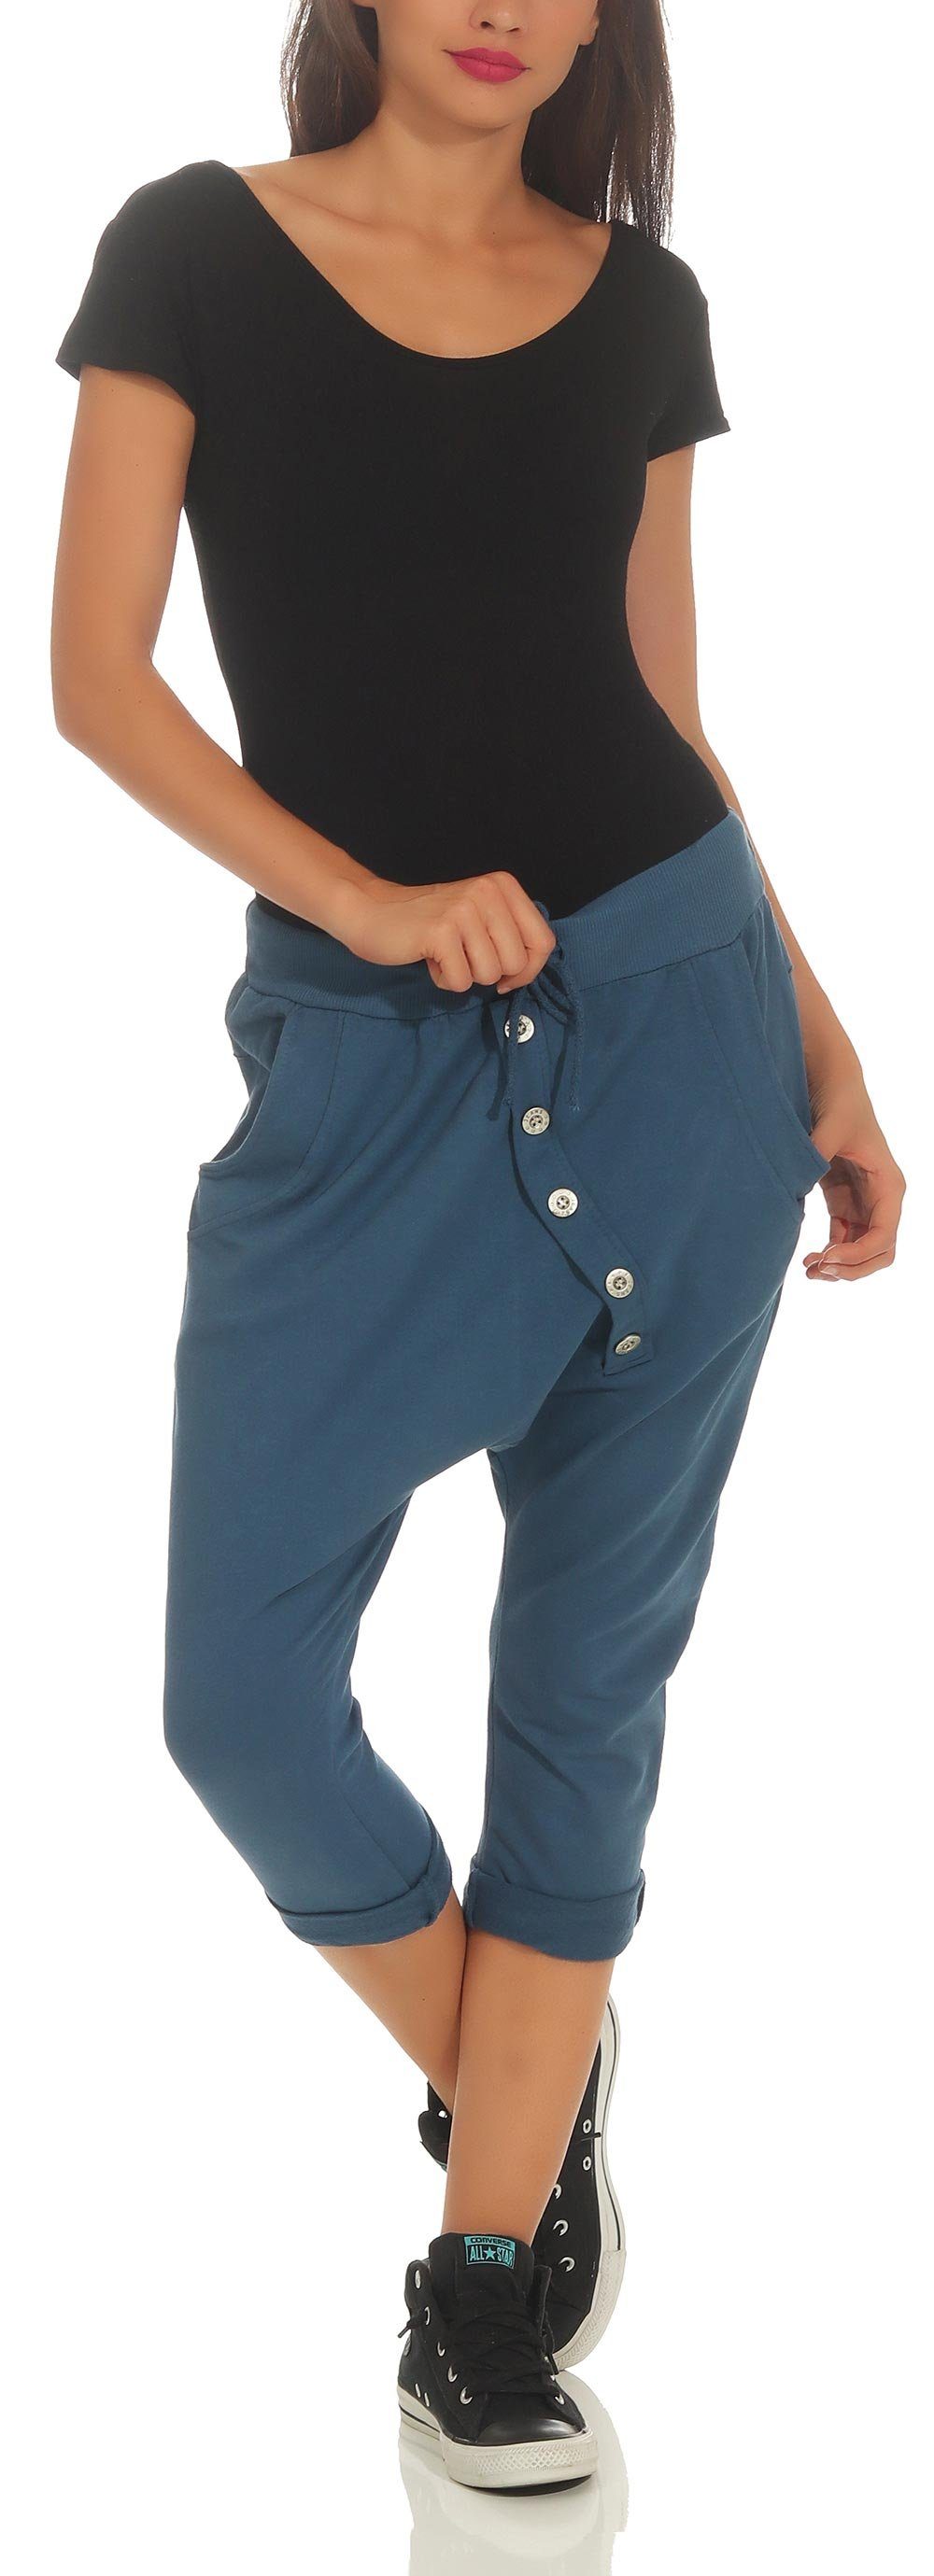 Sommer Einheitsgröße Jerseybund 8015 Sport more jeansblau mit elastischem malito Caprihose Hose fashion than